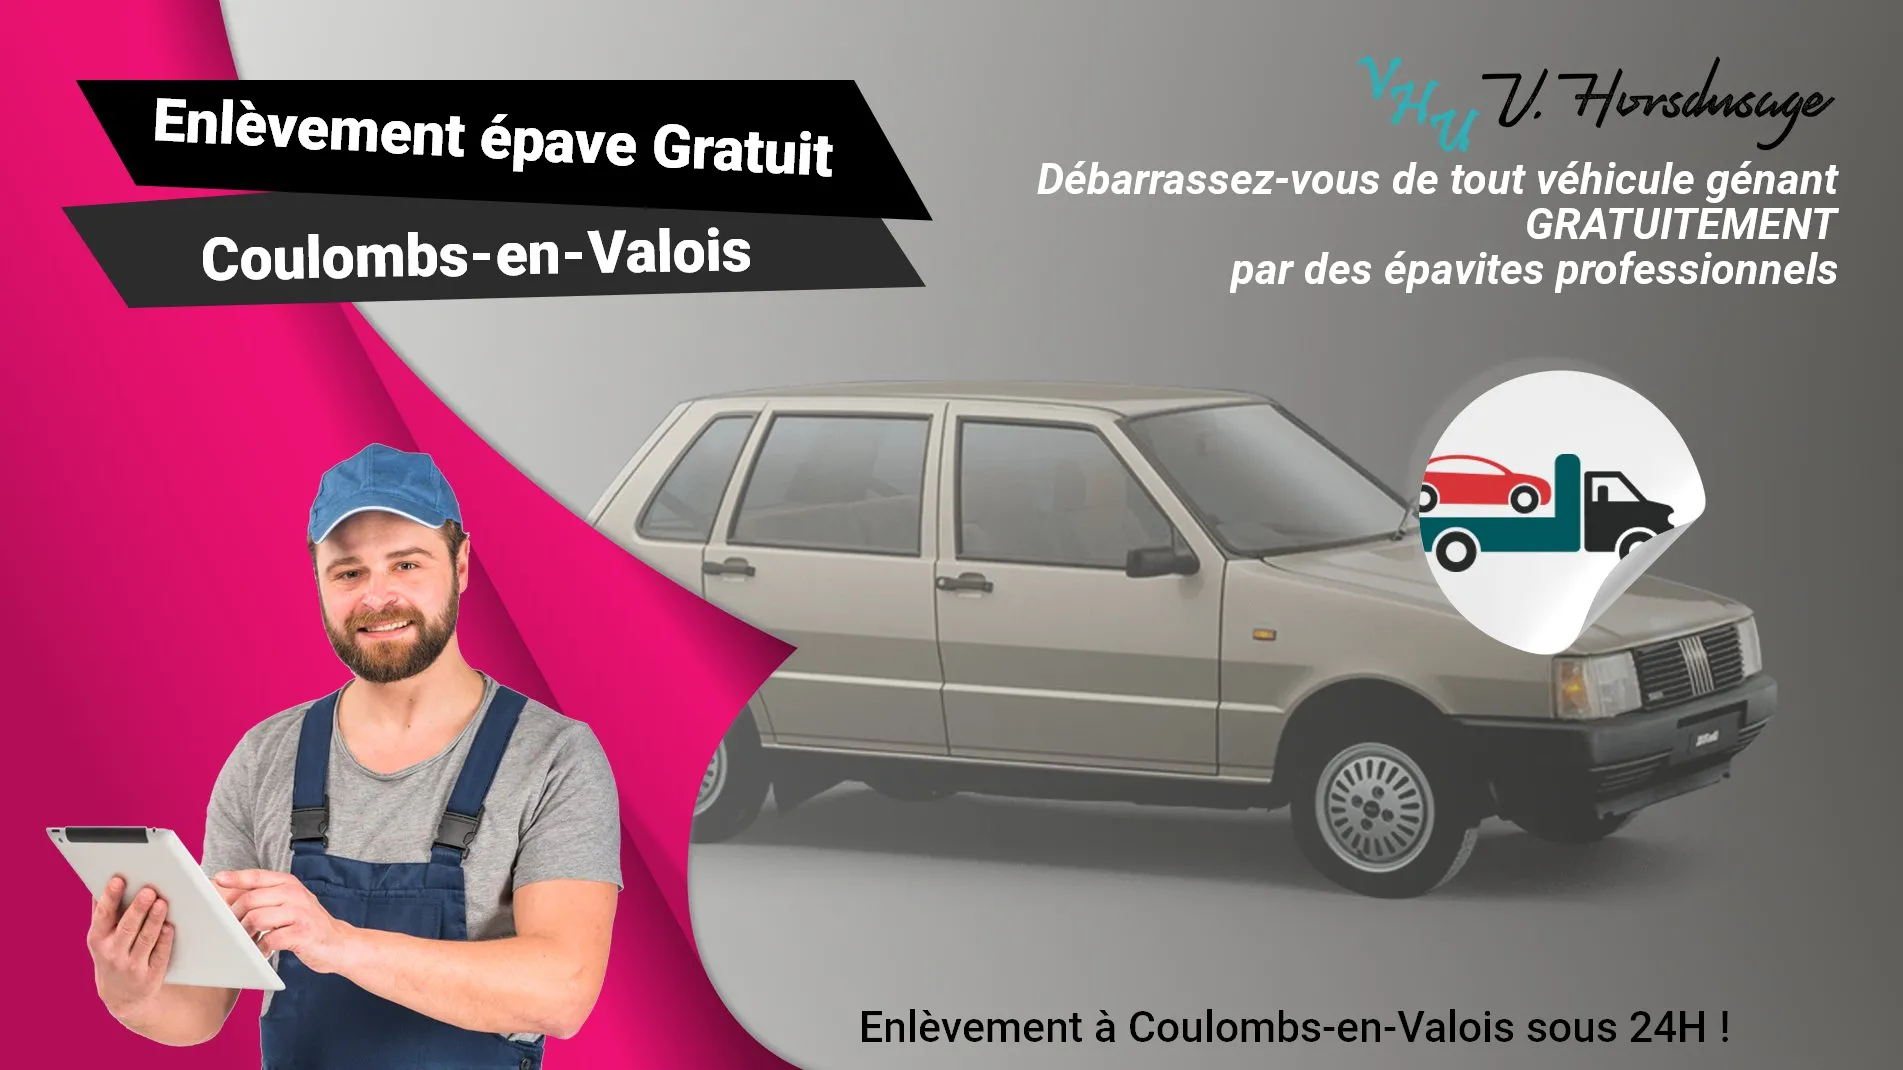 Pour un enlèvement gratuit à Coulombs-en-Valois, contactez nos épavistes agréé VHU